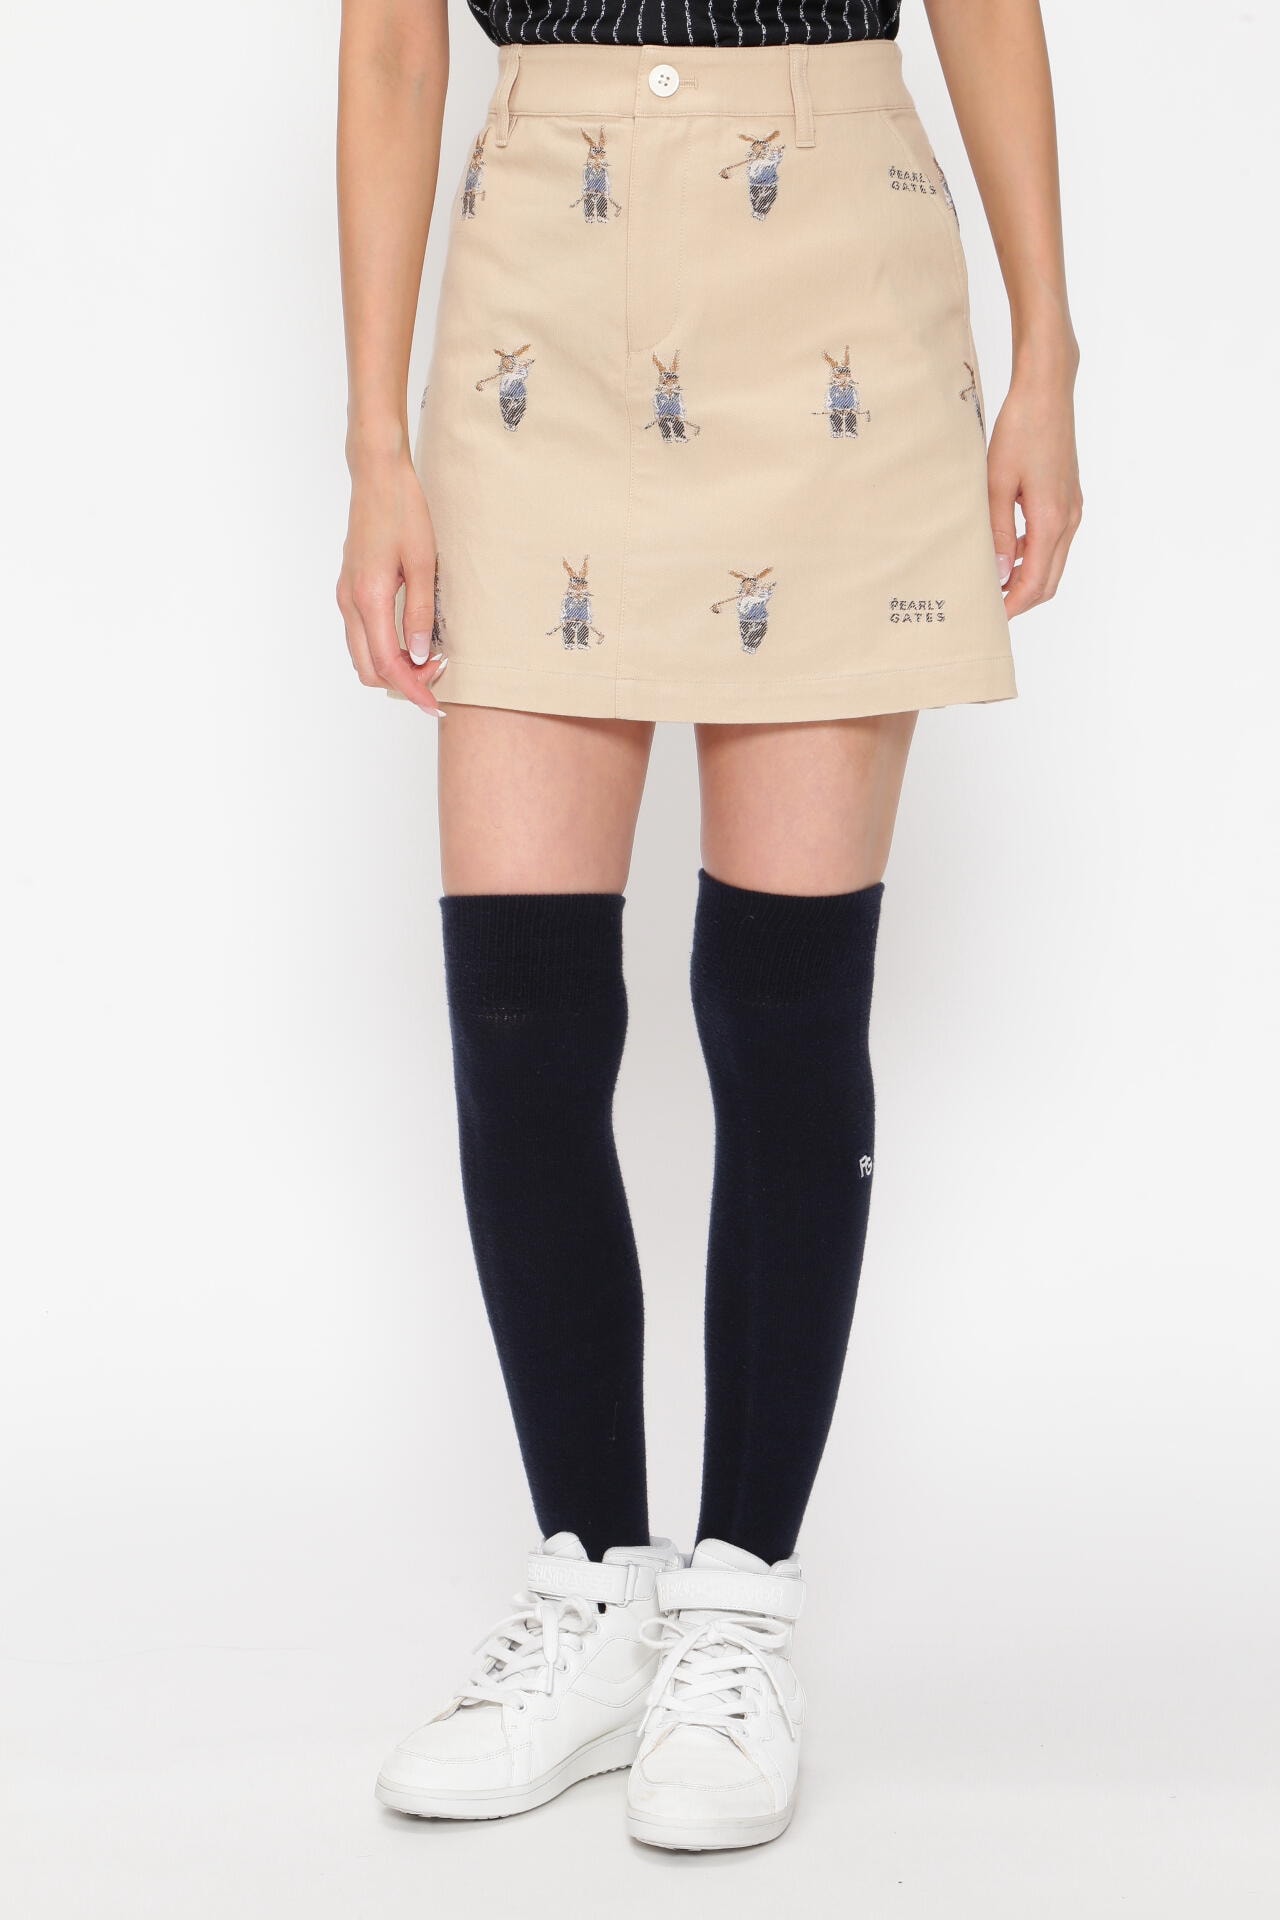 PEARLYGATES パーリーゲイツの可愛いスカート！35センチ色 - dibrass.com